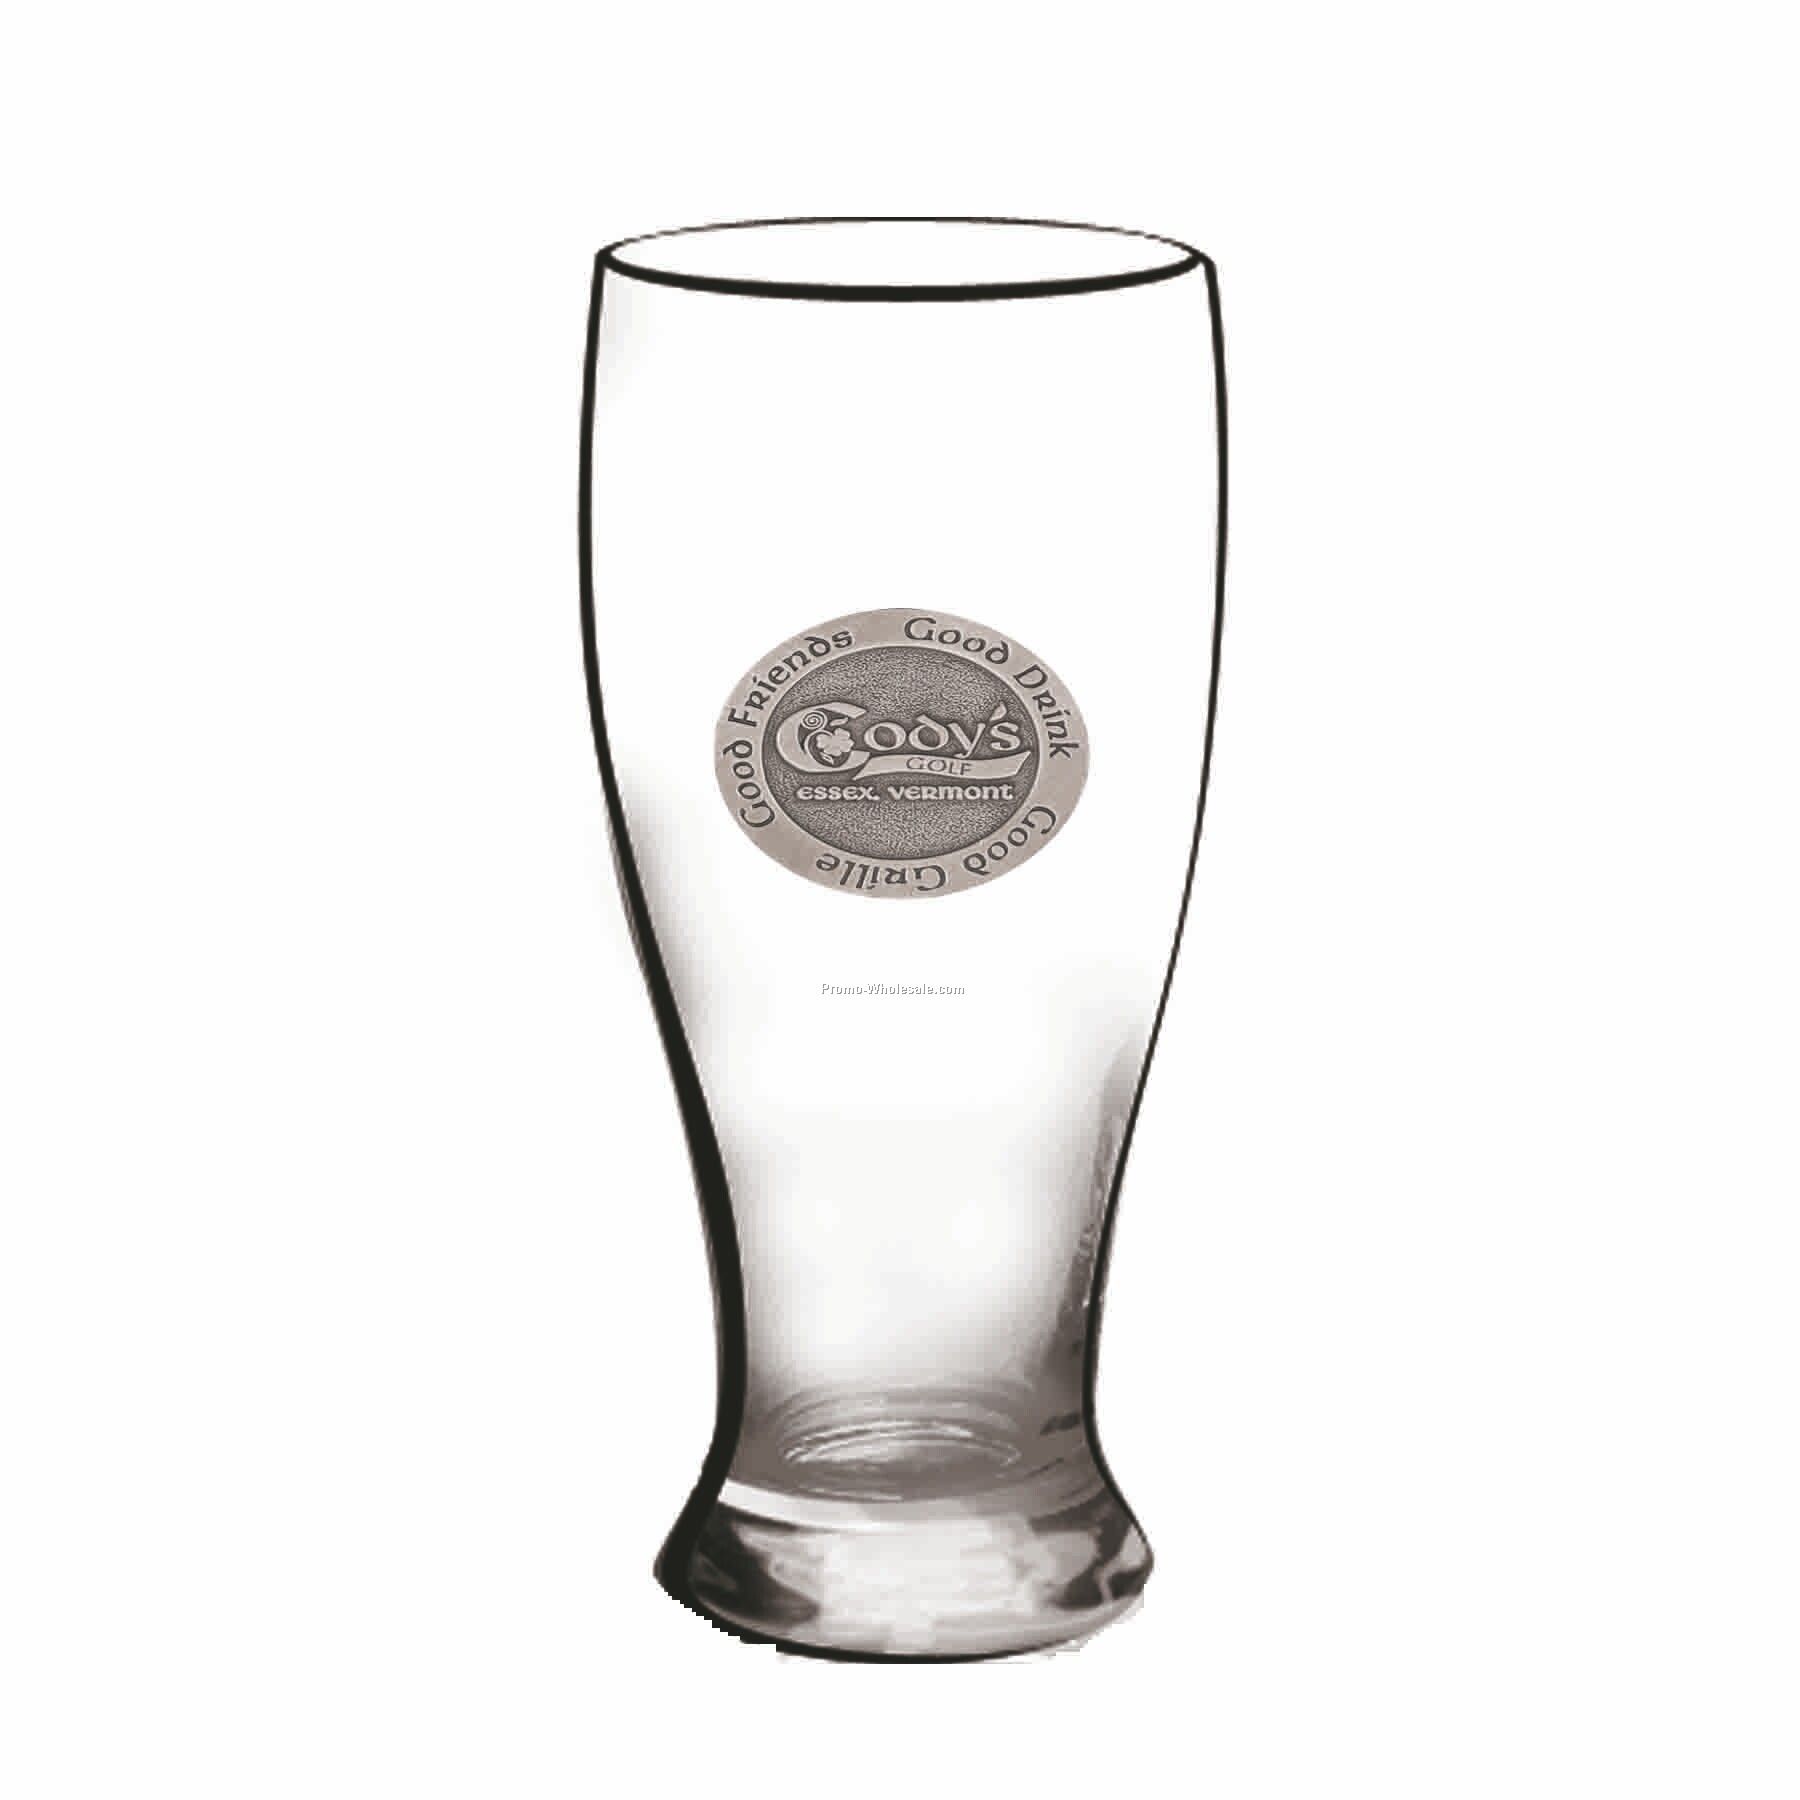 19 Oz. Crystal Pilsner Beer Glass W/ Curved Sides (Pewter Emblem)